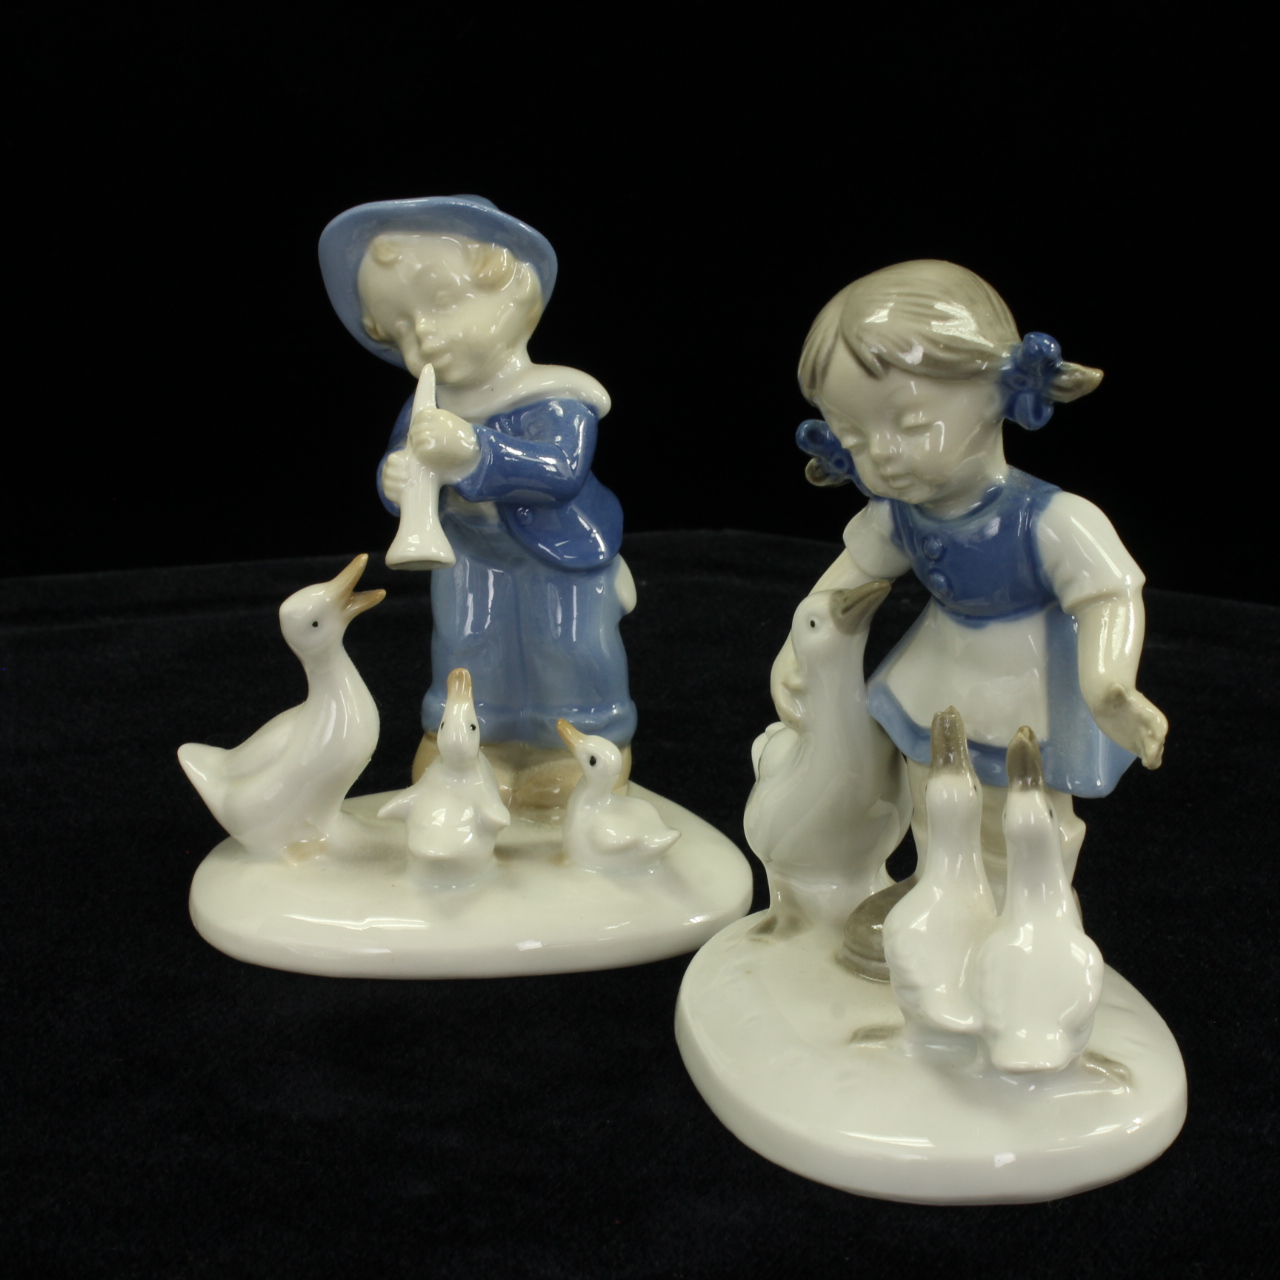 Pair of Hummel Figurines, Nr. 9447